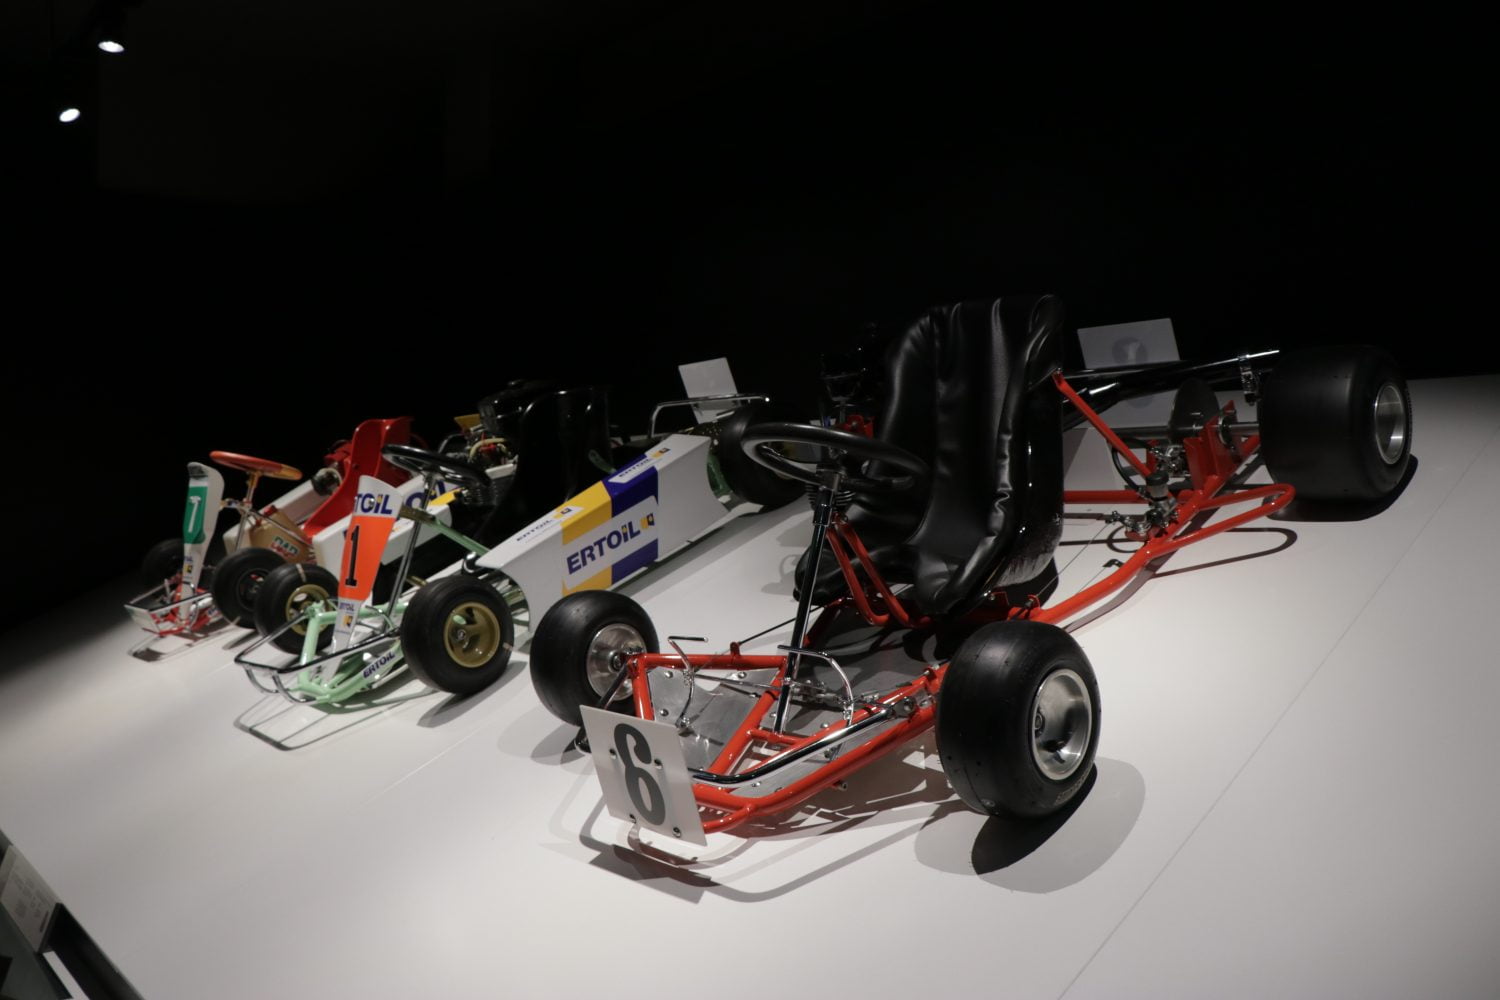 Bij een kijkje in de collectie zie je zelfs de karts waarmee Fernando Alonso zijn autosportcarrière begon.